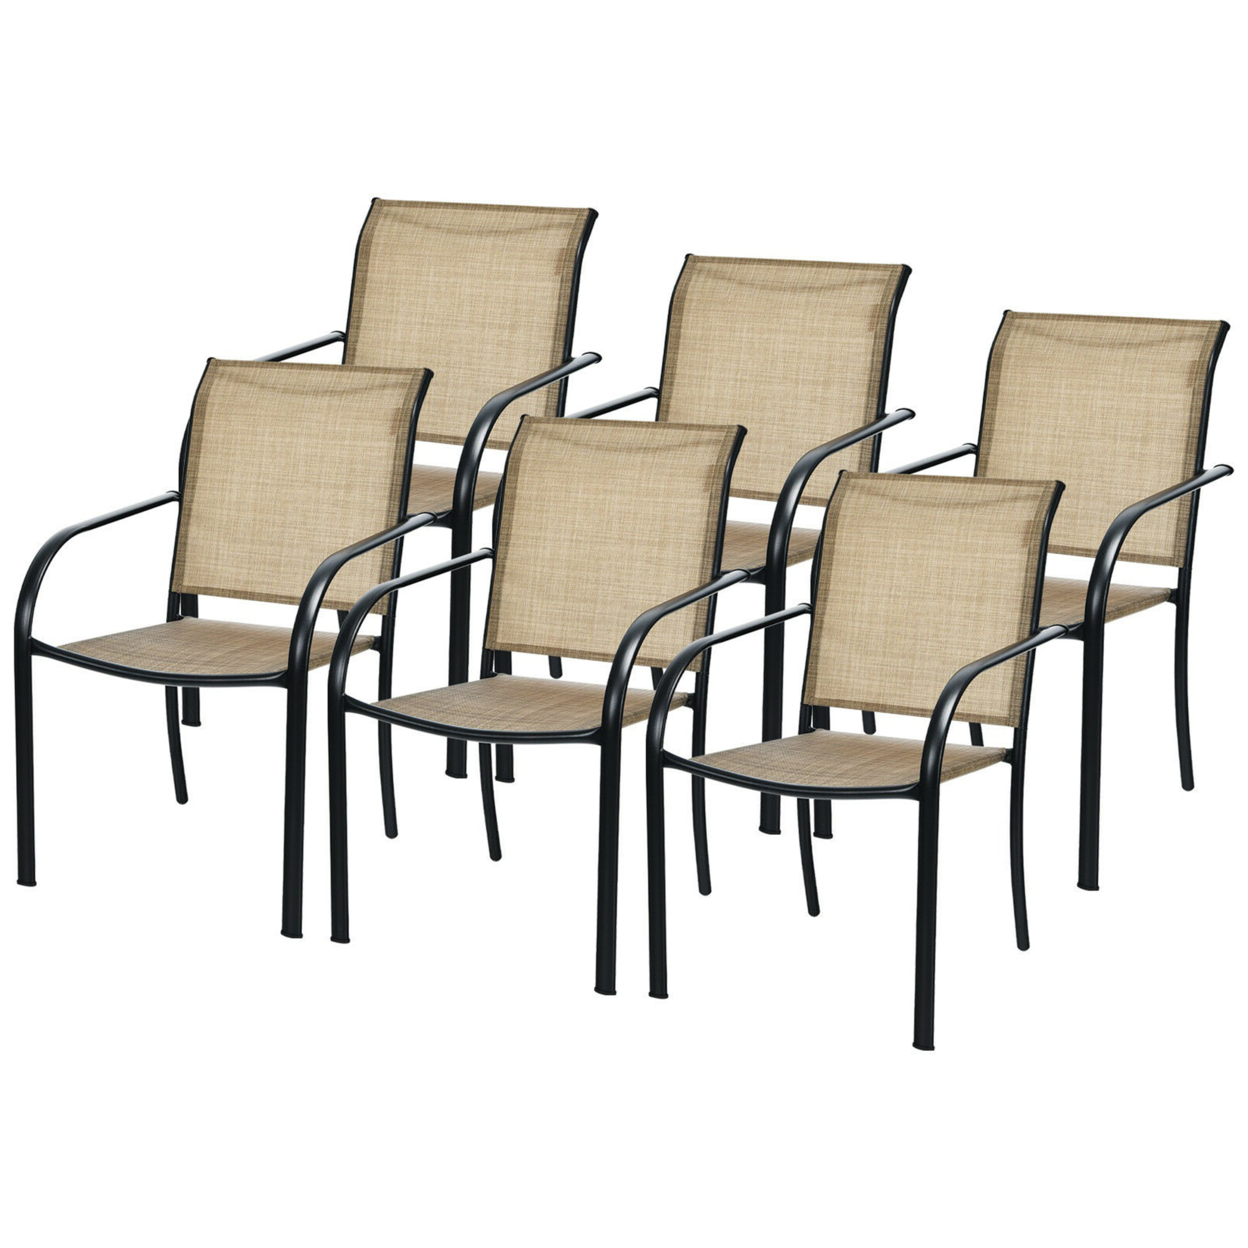 Gymax Patio Dining Chair Outdoor Stackable Armchair Backyard Garden - 6 Pcs